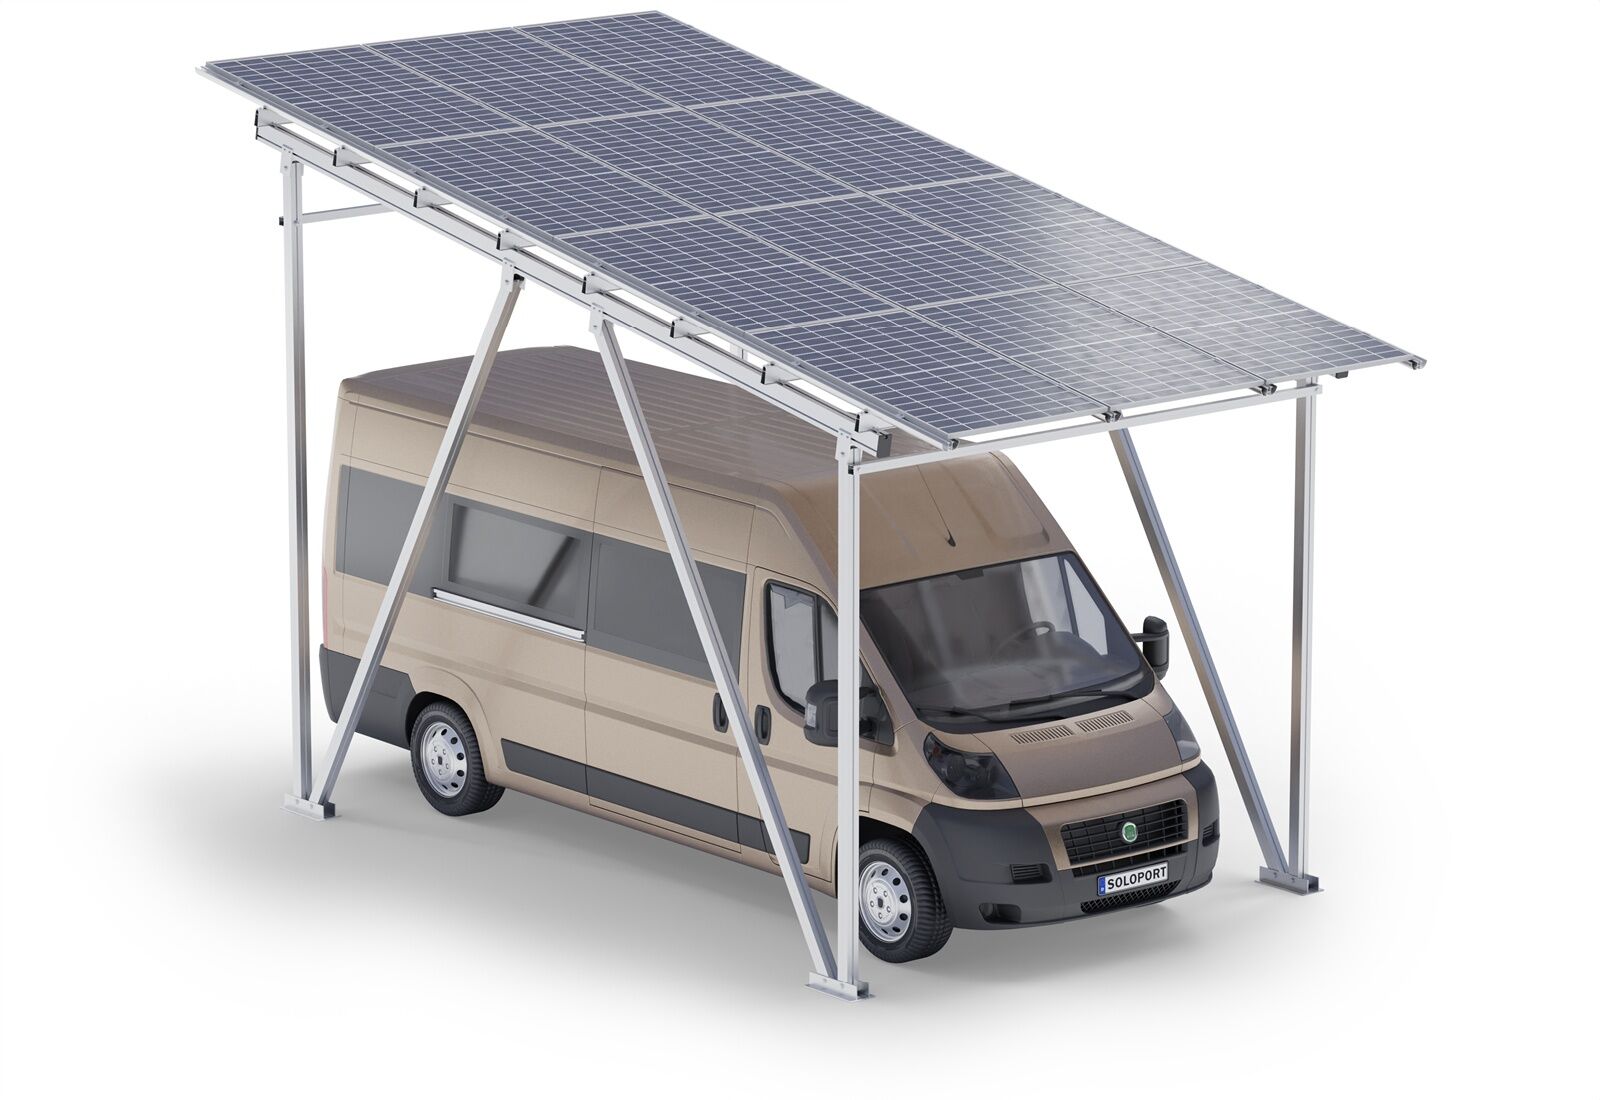 Châssis de carport pour les camping-cars SPG5-W avec 12 panneaux